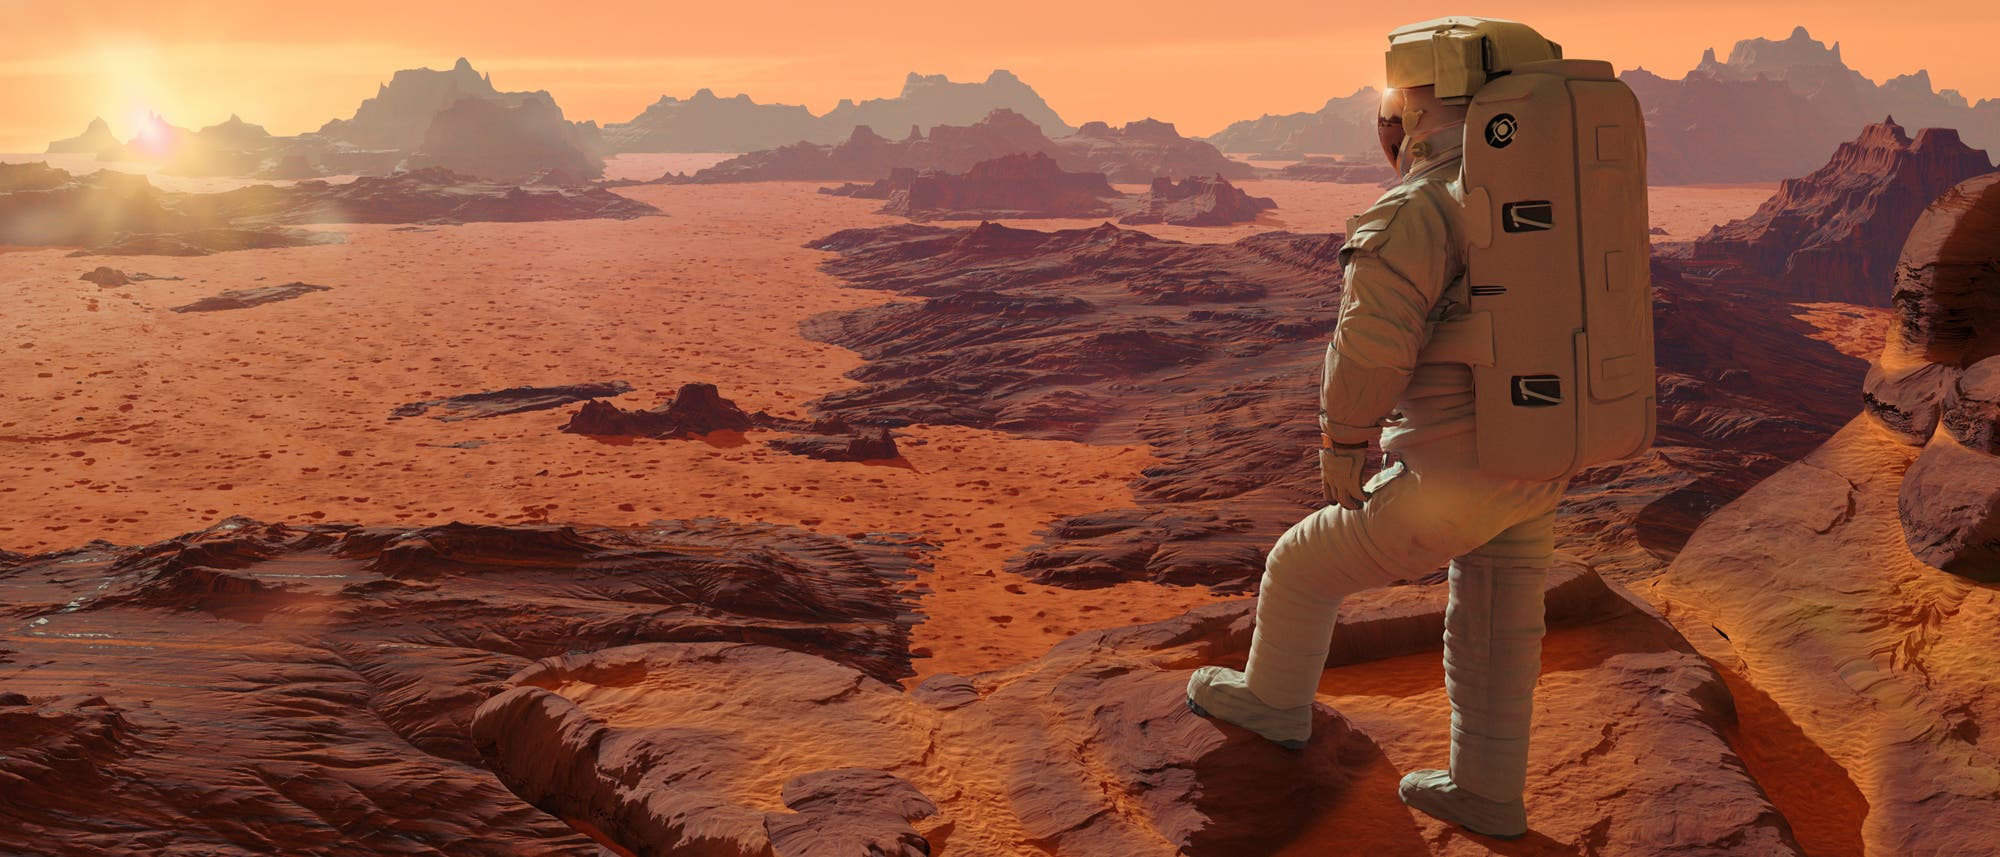 Astronaut auf dem Mars (künstlerische Darstellung)